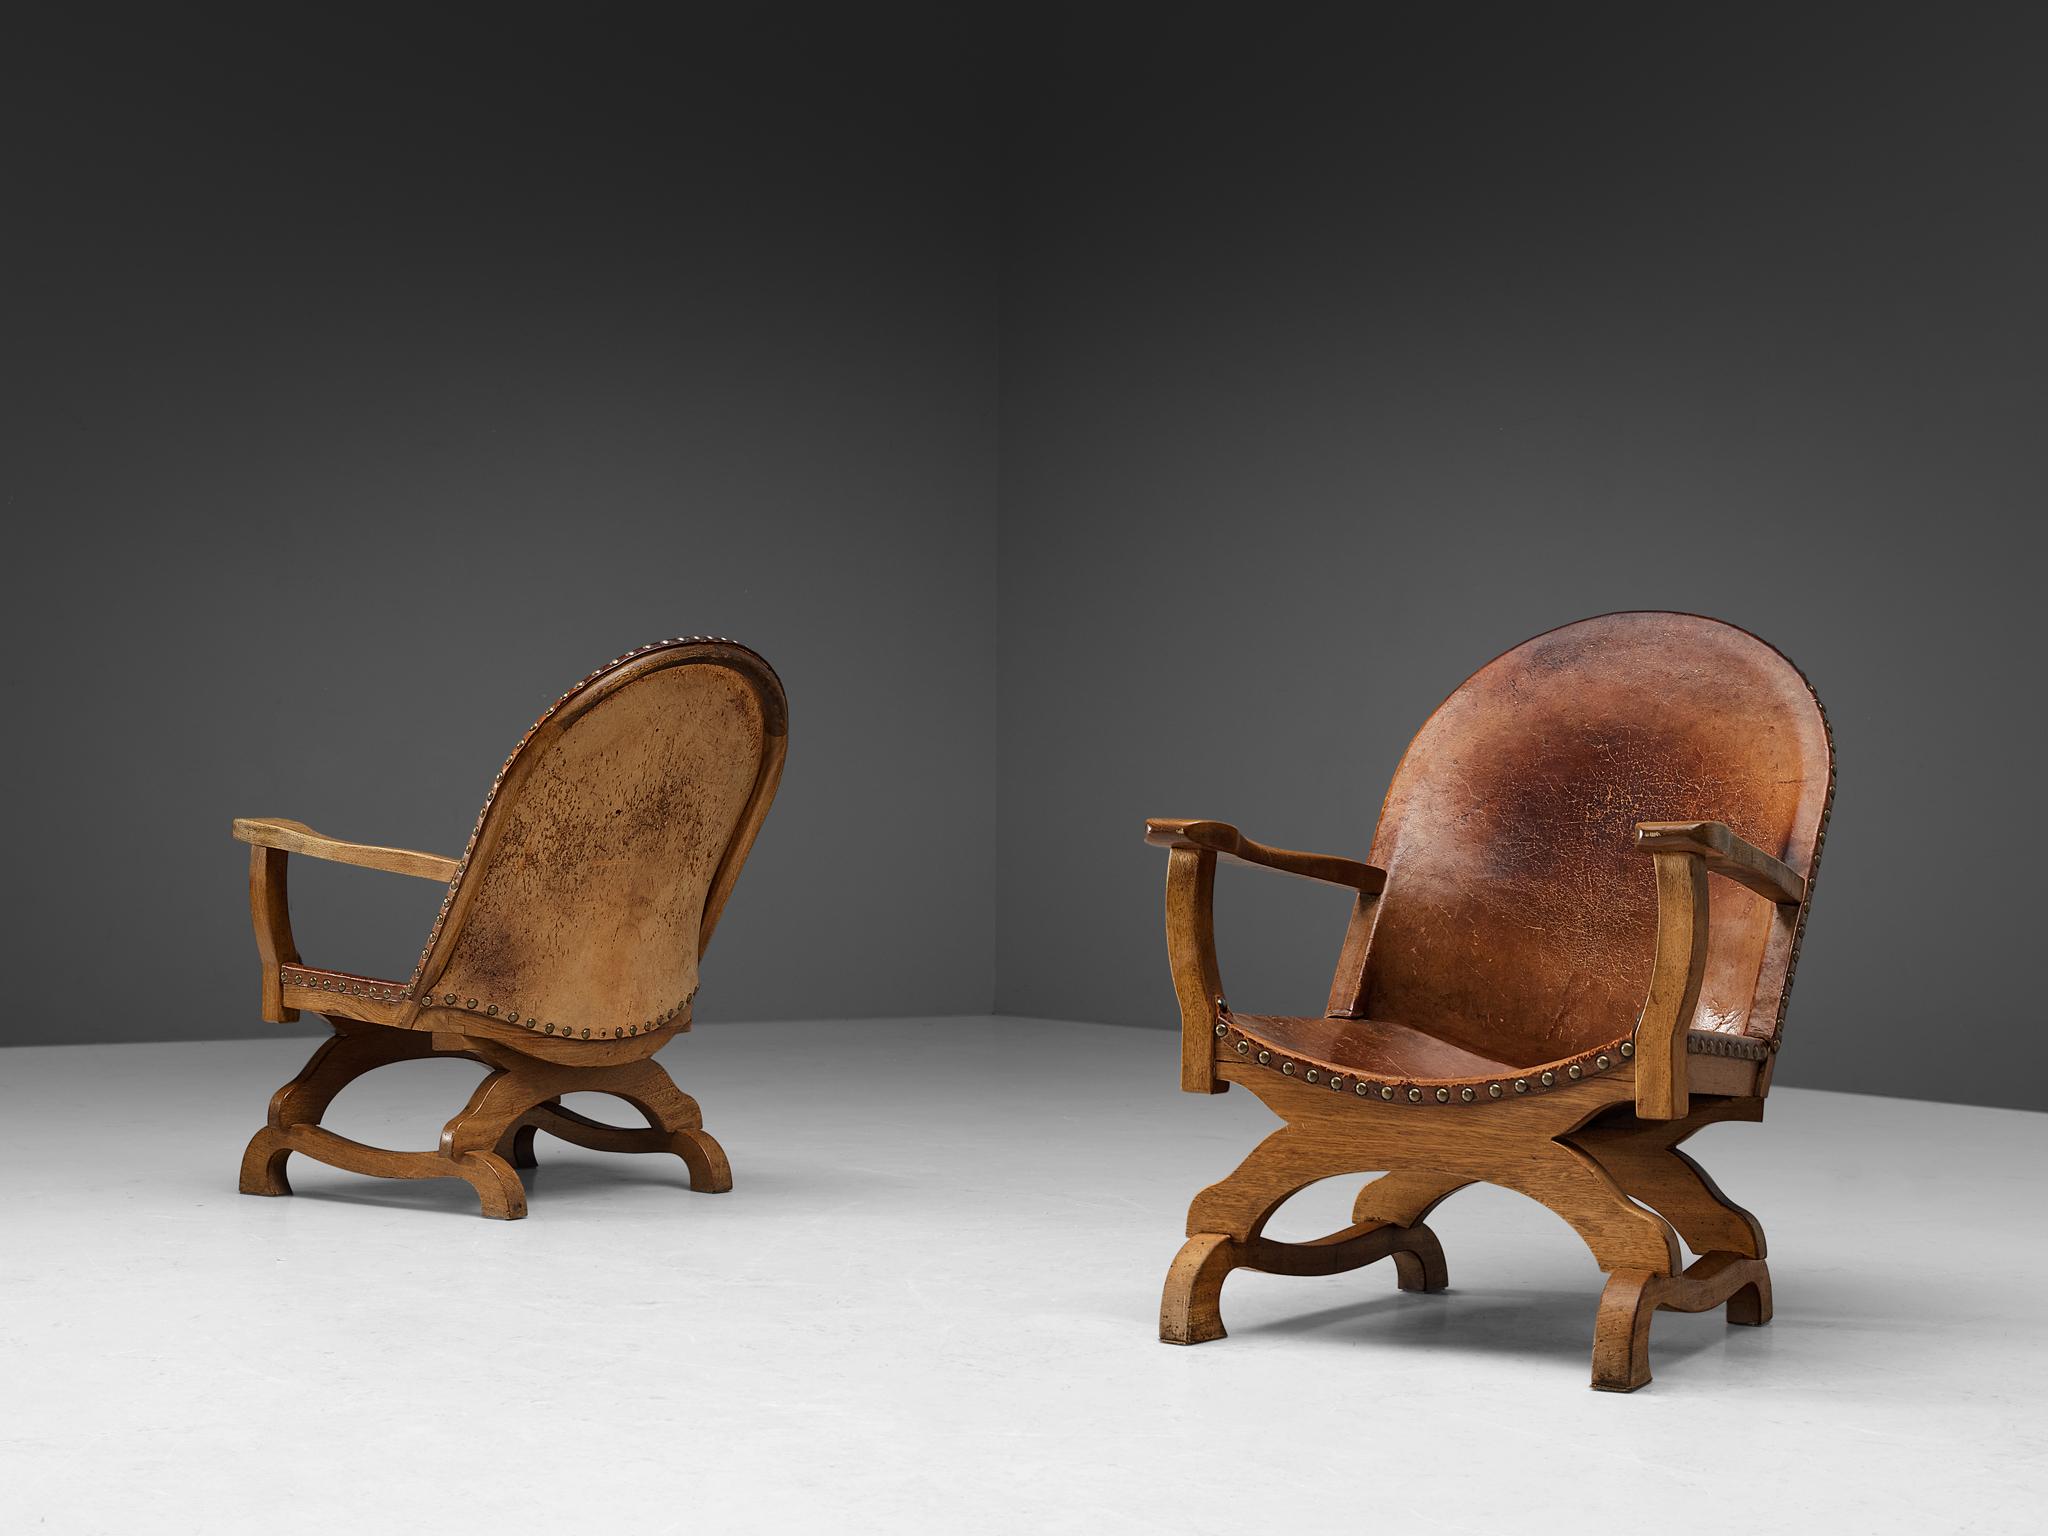 Paire de chaises longues, cuir, laiton, chêne, Espagne, années 1960.

Ces chaises longues sont originaires d'Espagne et se réfèrent stylistiquement à la période néo-classique de la fin du XIXe siècle. La construction de la base ressemble à la chaise